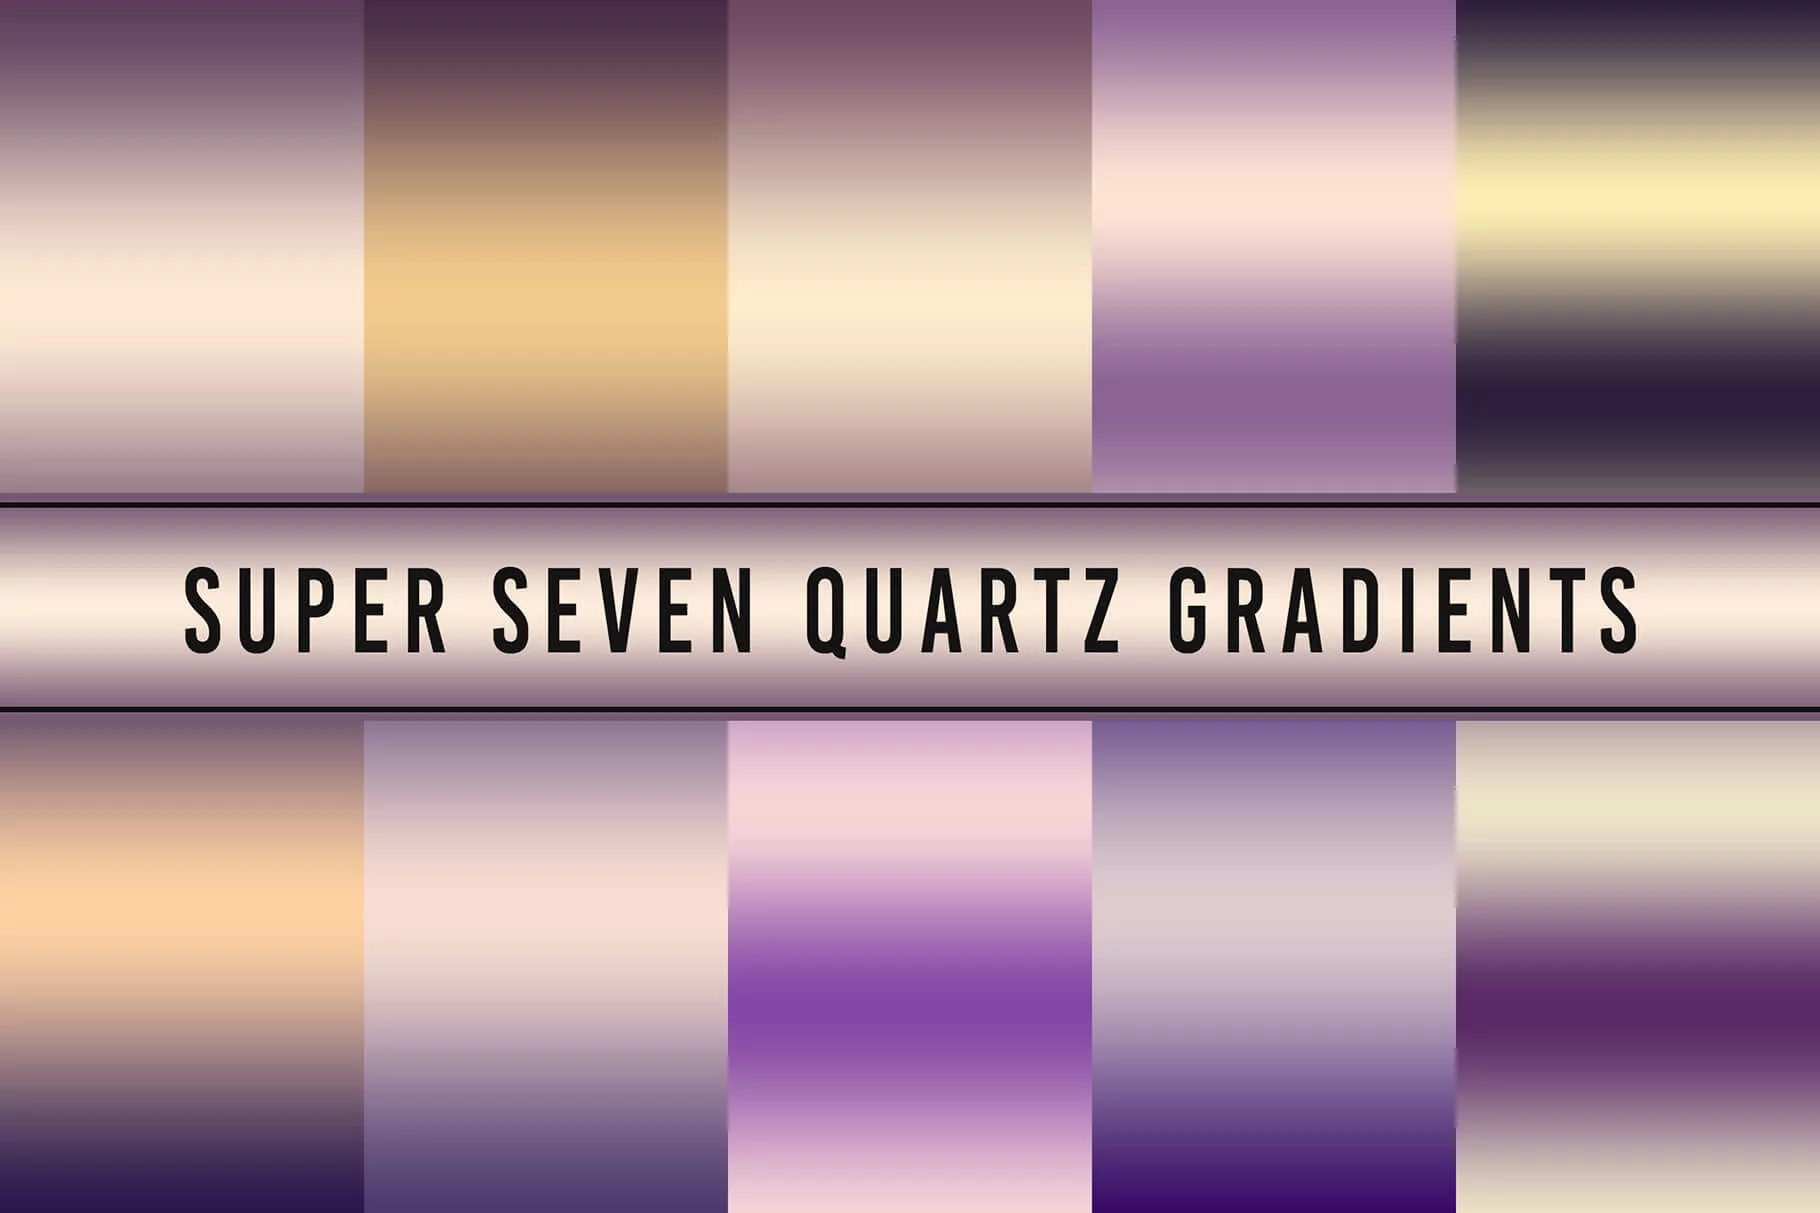 Super Seven Quartz Gradients